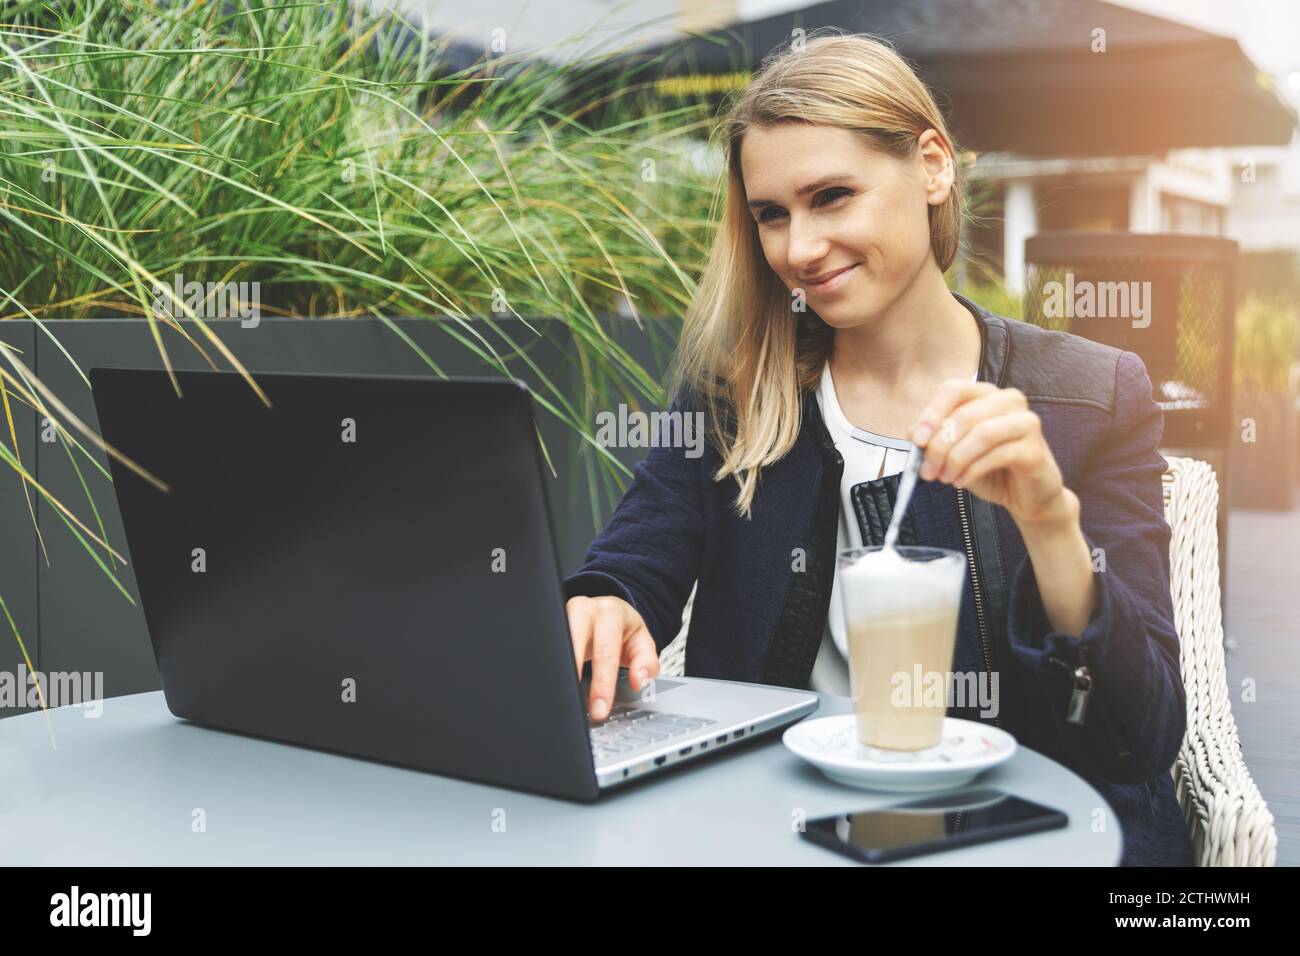 giovane donna che beve caffè latte nella terrazza esterna del caffè e lavora con il computer portatile. lavoro remoto freelance Foto Stock